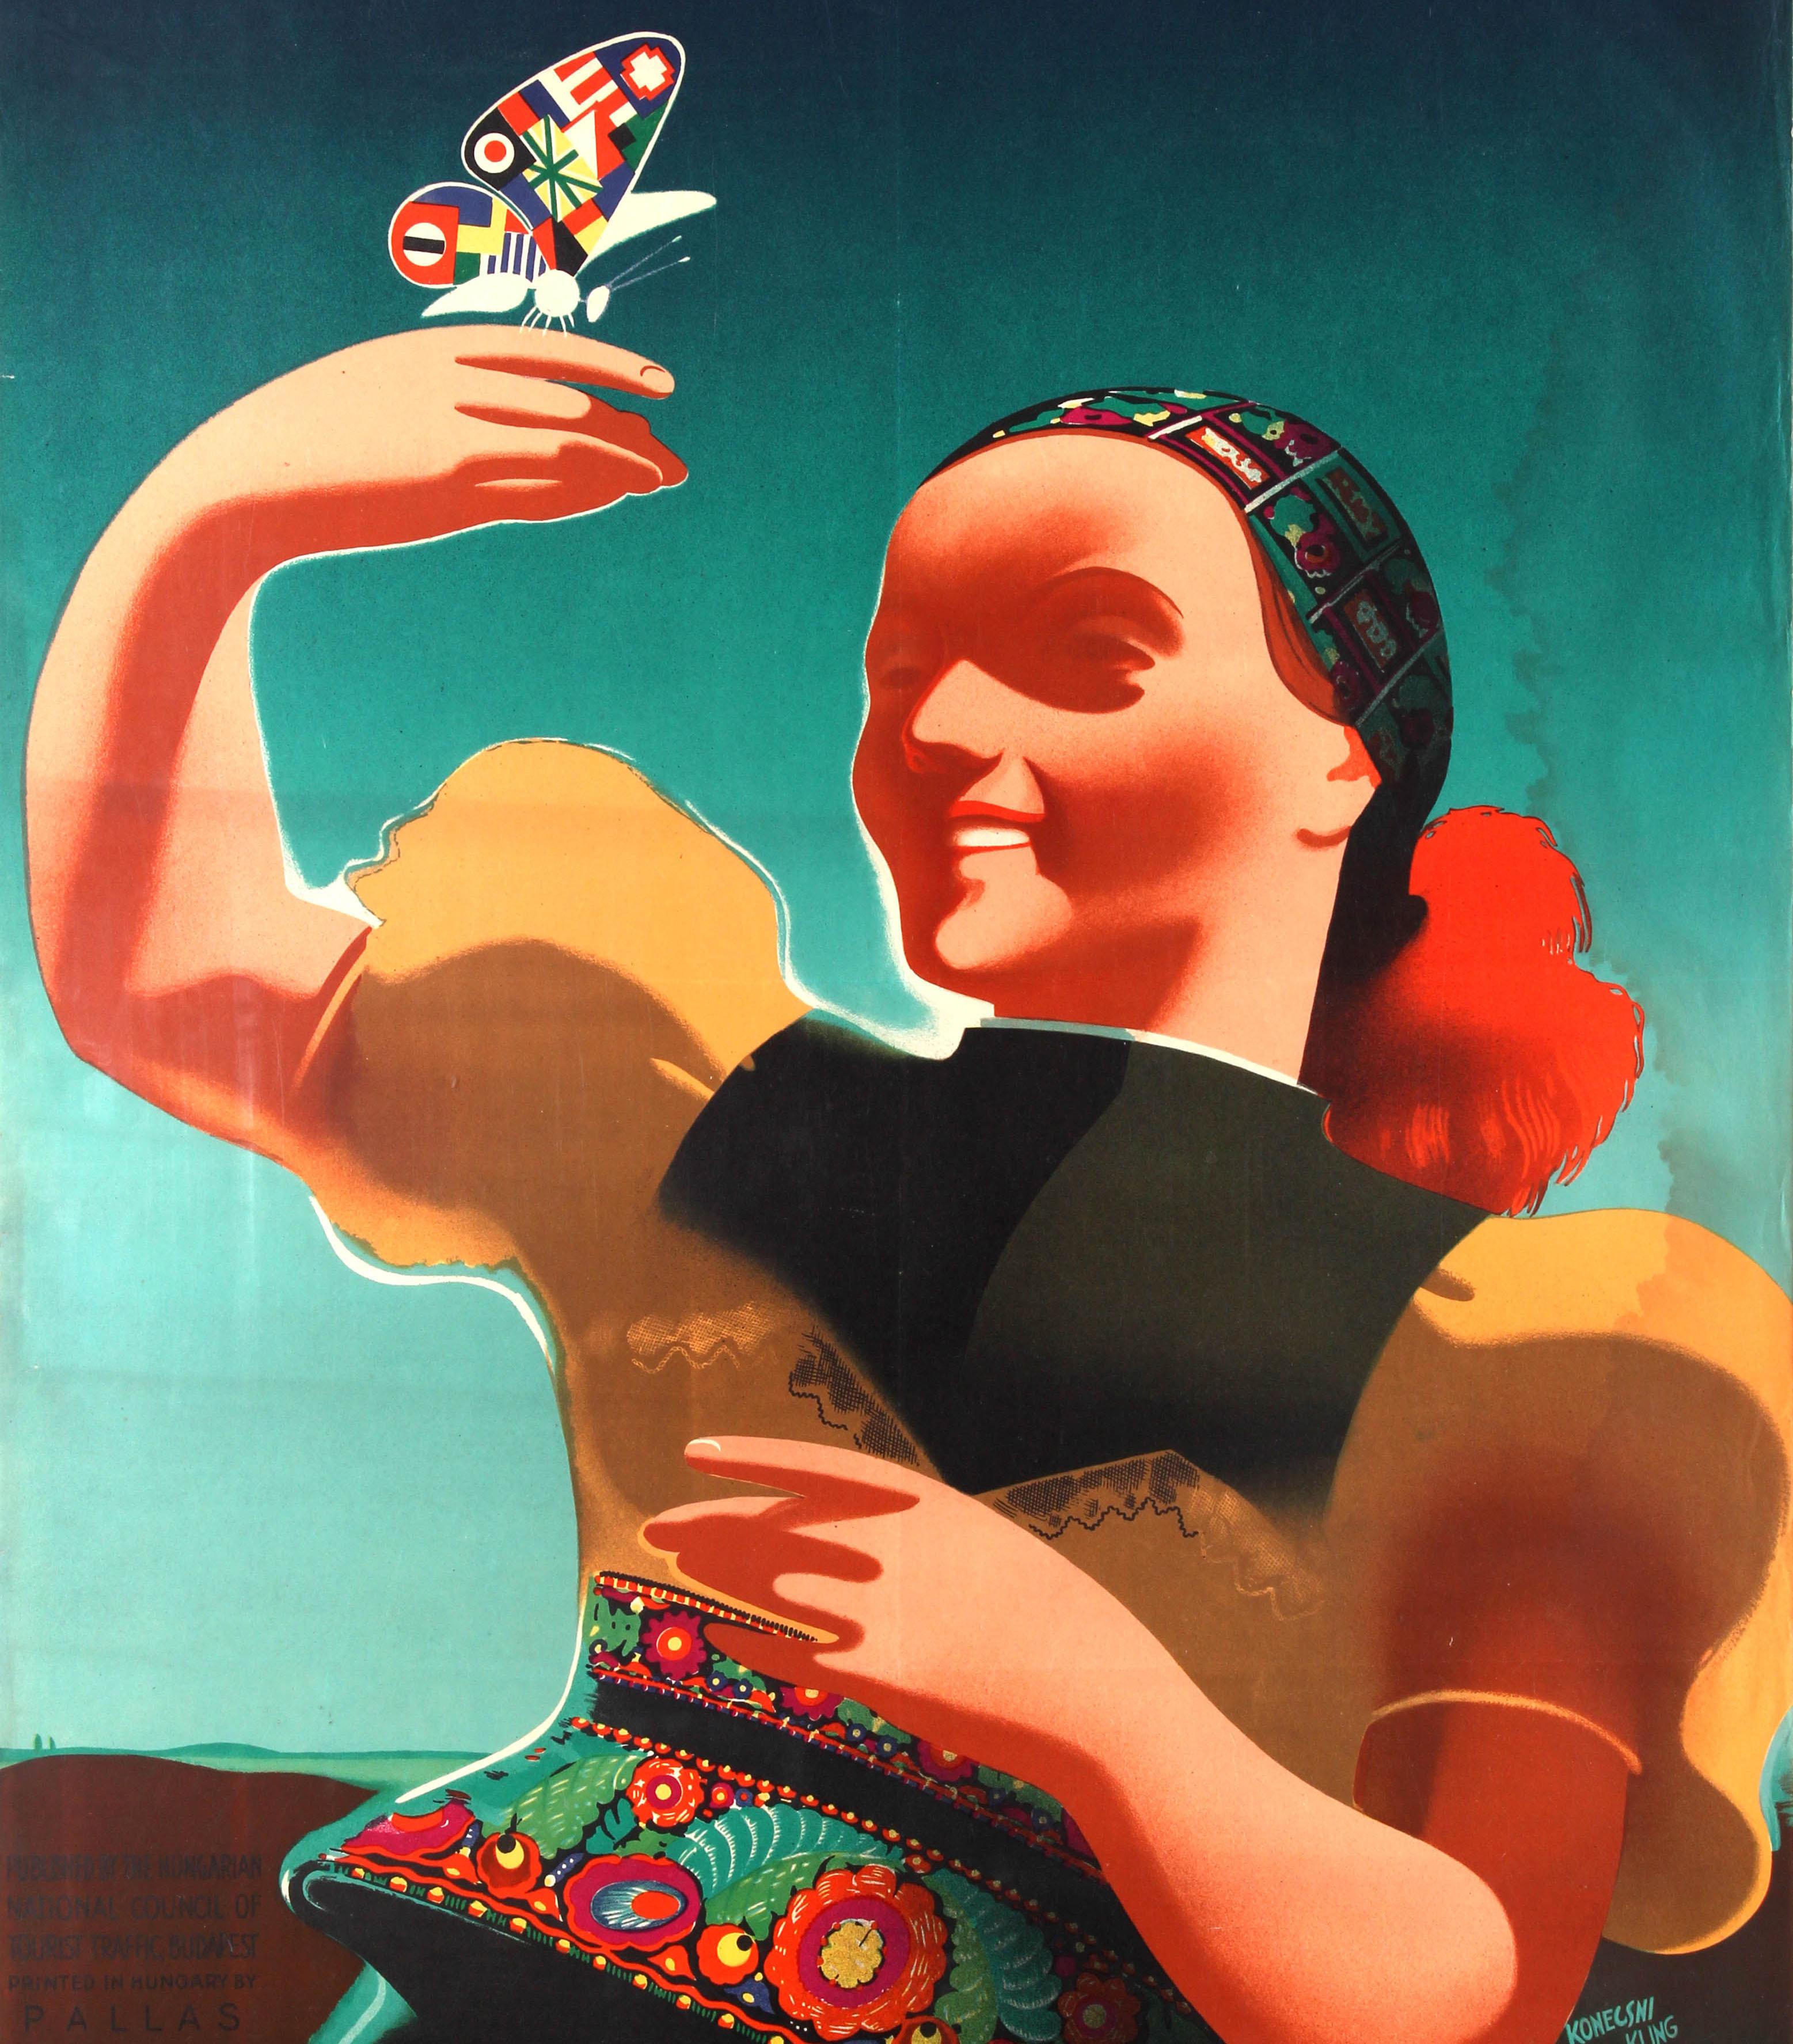 Original-Reiseplakat für Ungarn / Hongrie mit einer großartigen Art-Deco-Illustration, die eine lächelnde Dame in einer traditionellen Tracht zeigt, die einen Schmetterling mit bunten Fahnen auf den Flügeln vor dem Hintergrund des Himmels hält.